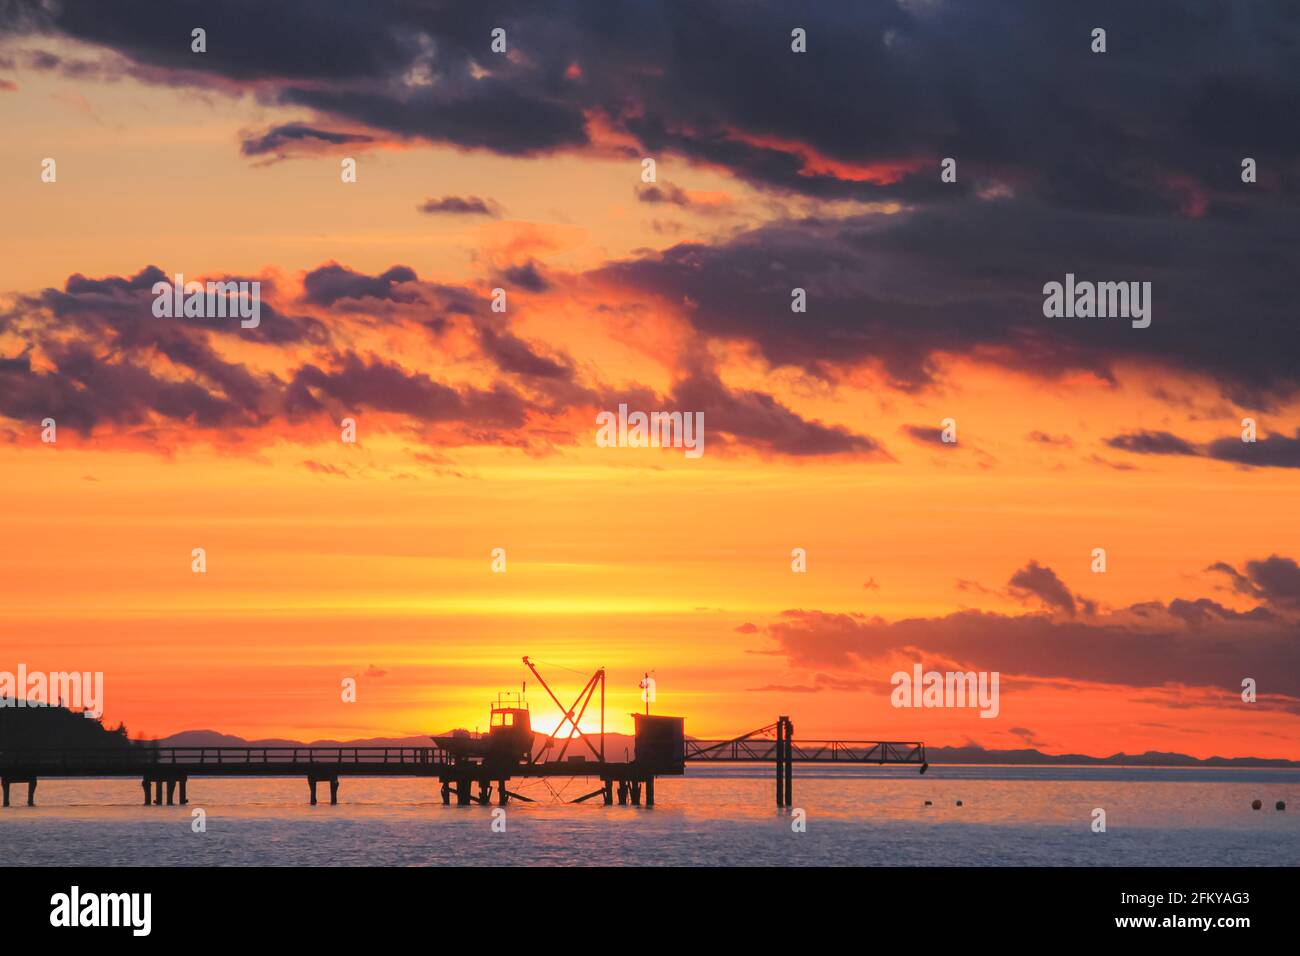 Moody, dramatisch, farbenfroh und lebhaft orange Sonnenuntergang oder Sonnenaufgang Himmel über Burrard Inlet Pier am Kitsilano Beach in Vancouver, British Columbia, Kanada Stockfoto